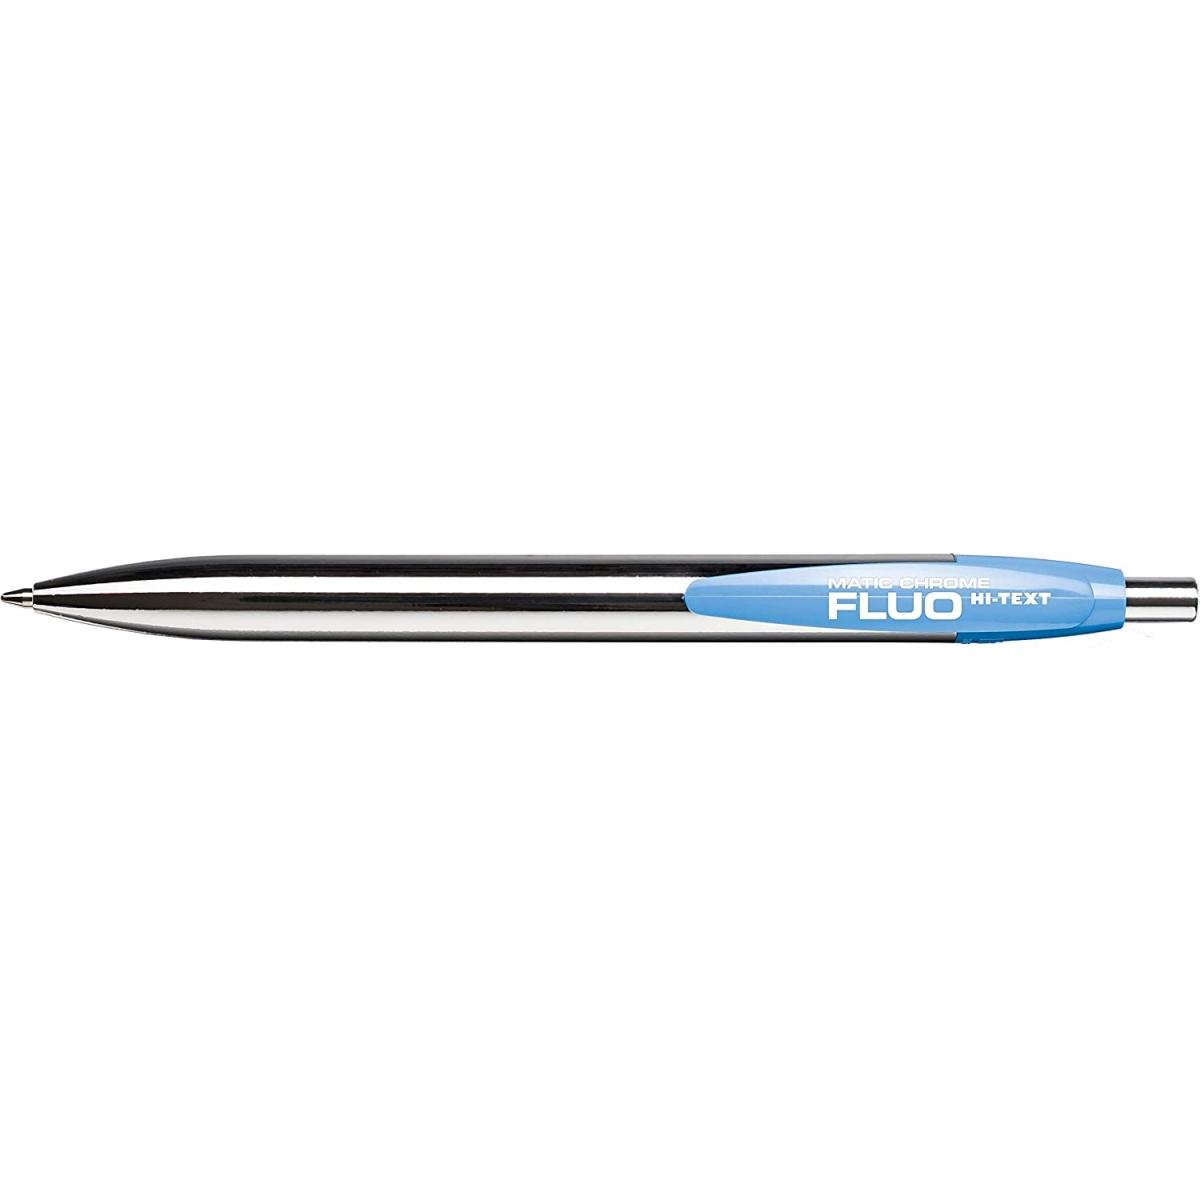 Hi-text matic chrome fluo 908 - penna a scatto - tratto 1 mm - inchiostro blu